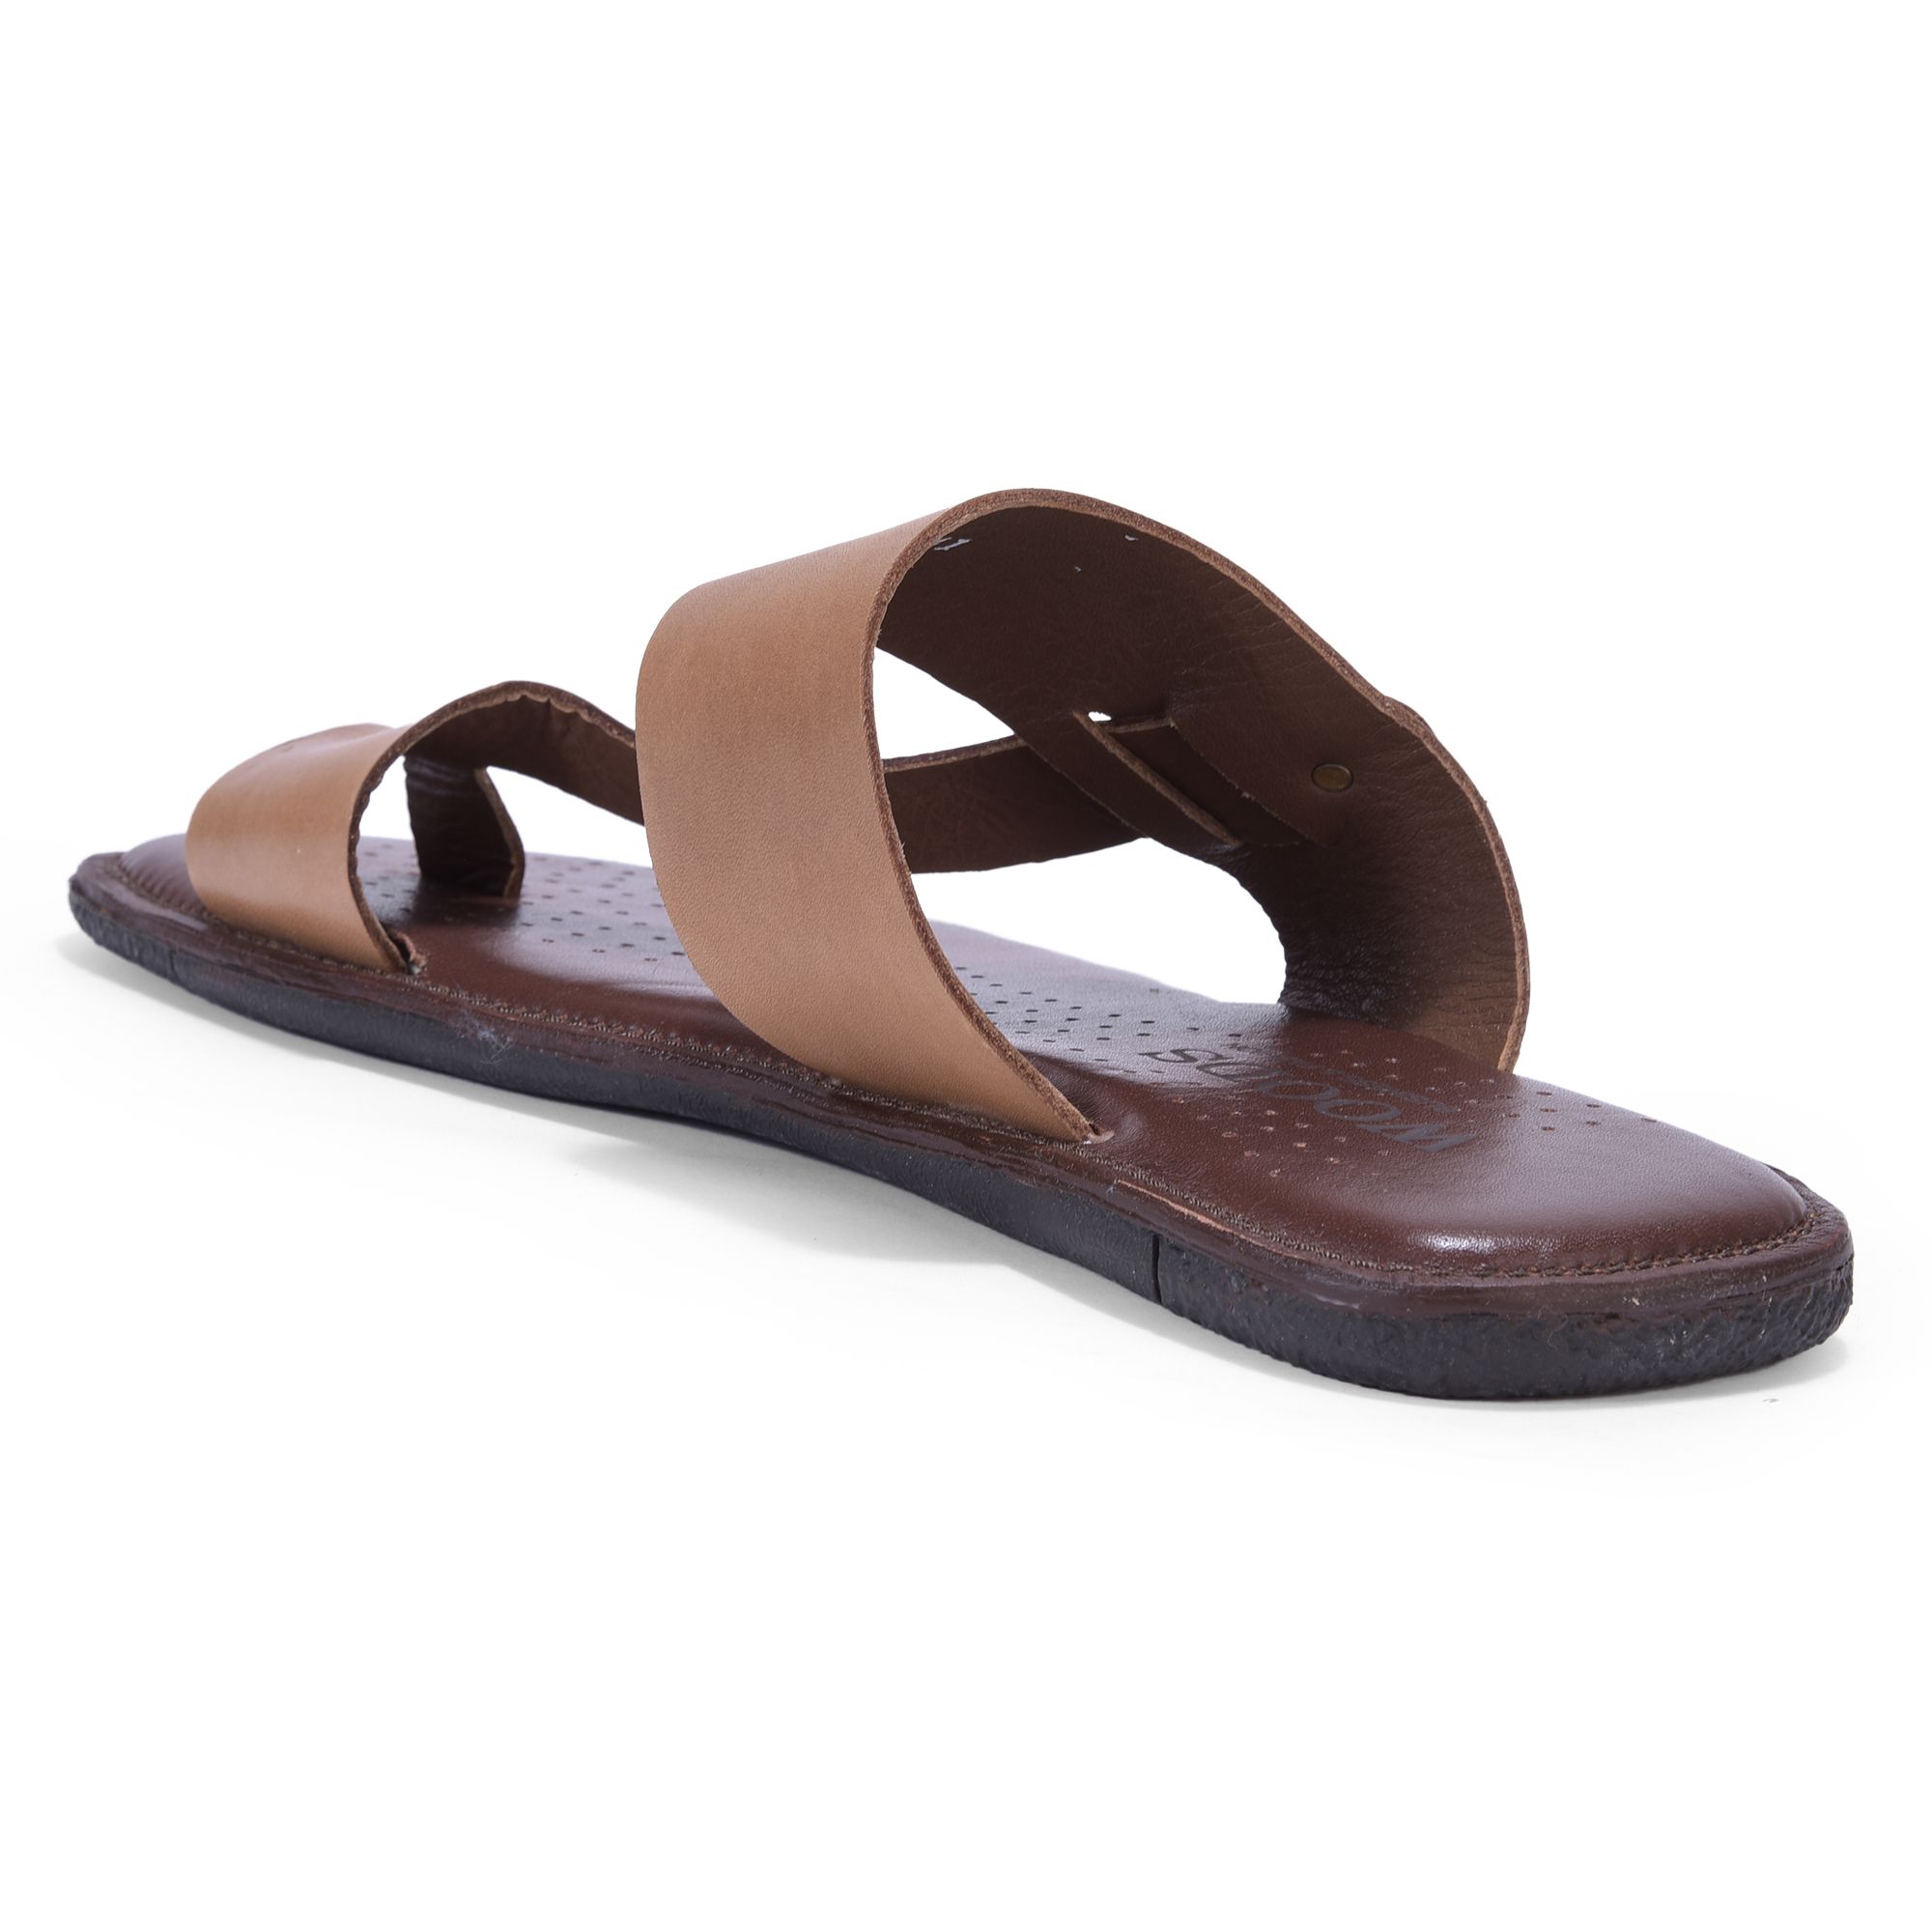 Tan leather slipper for men